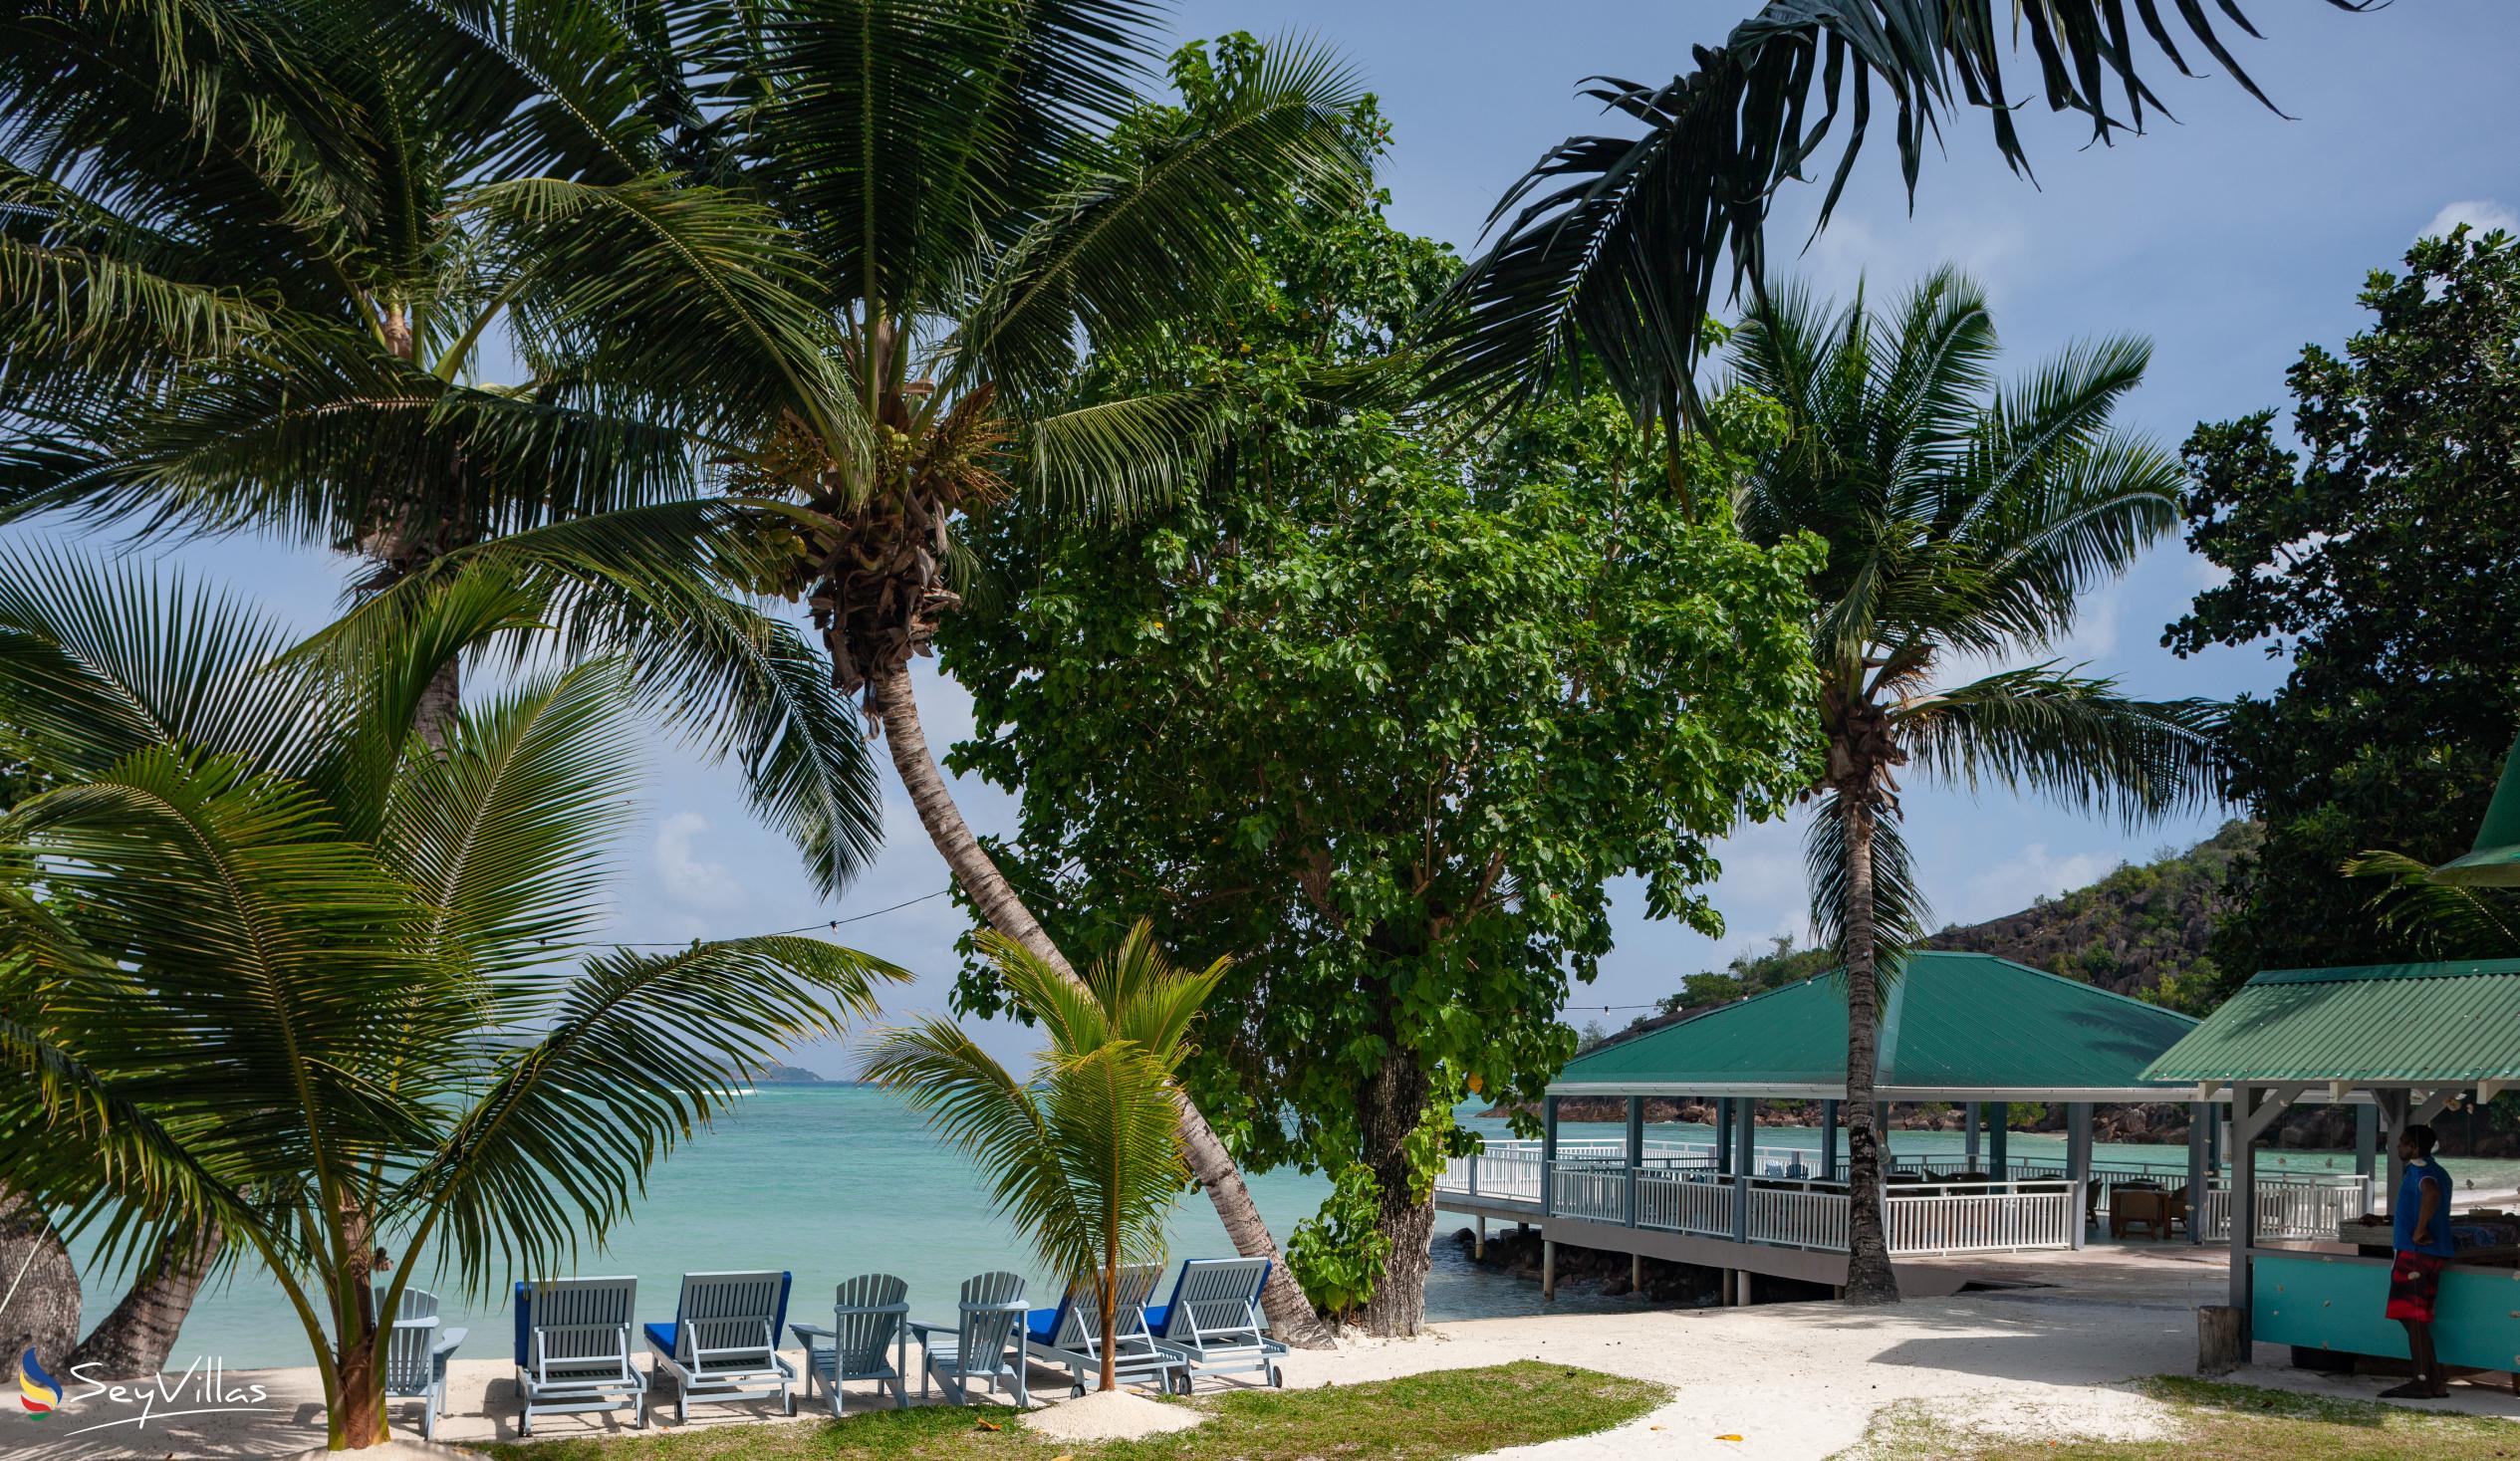 Foto 37: Hotel L'Archipel - Aussenbereich - Praslin (Seychellen)